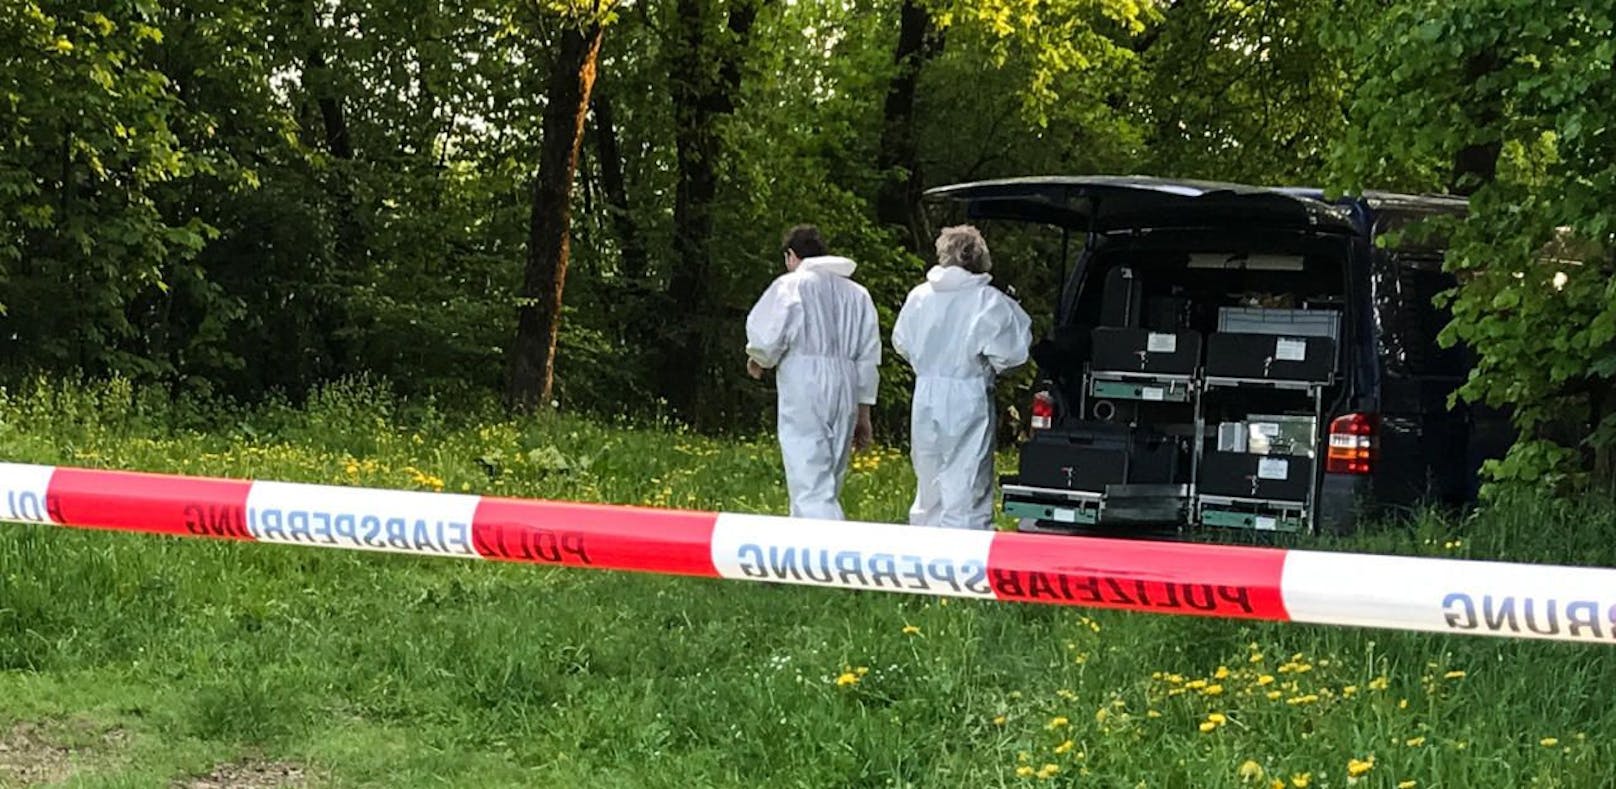 Leiche in Plastiksack hinter Sportplatz entdeckt